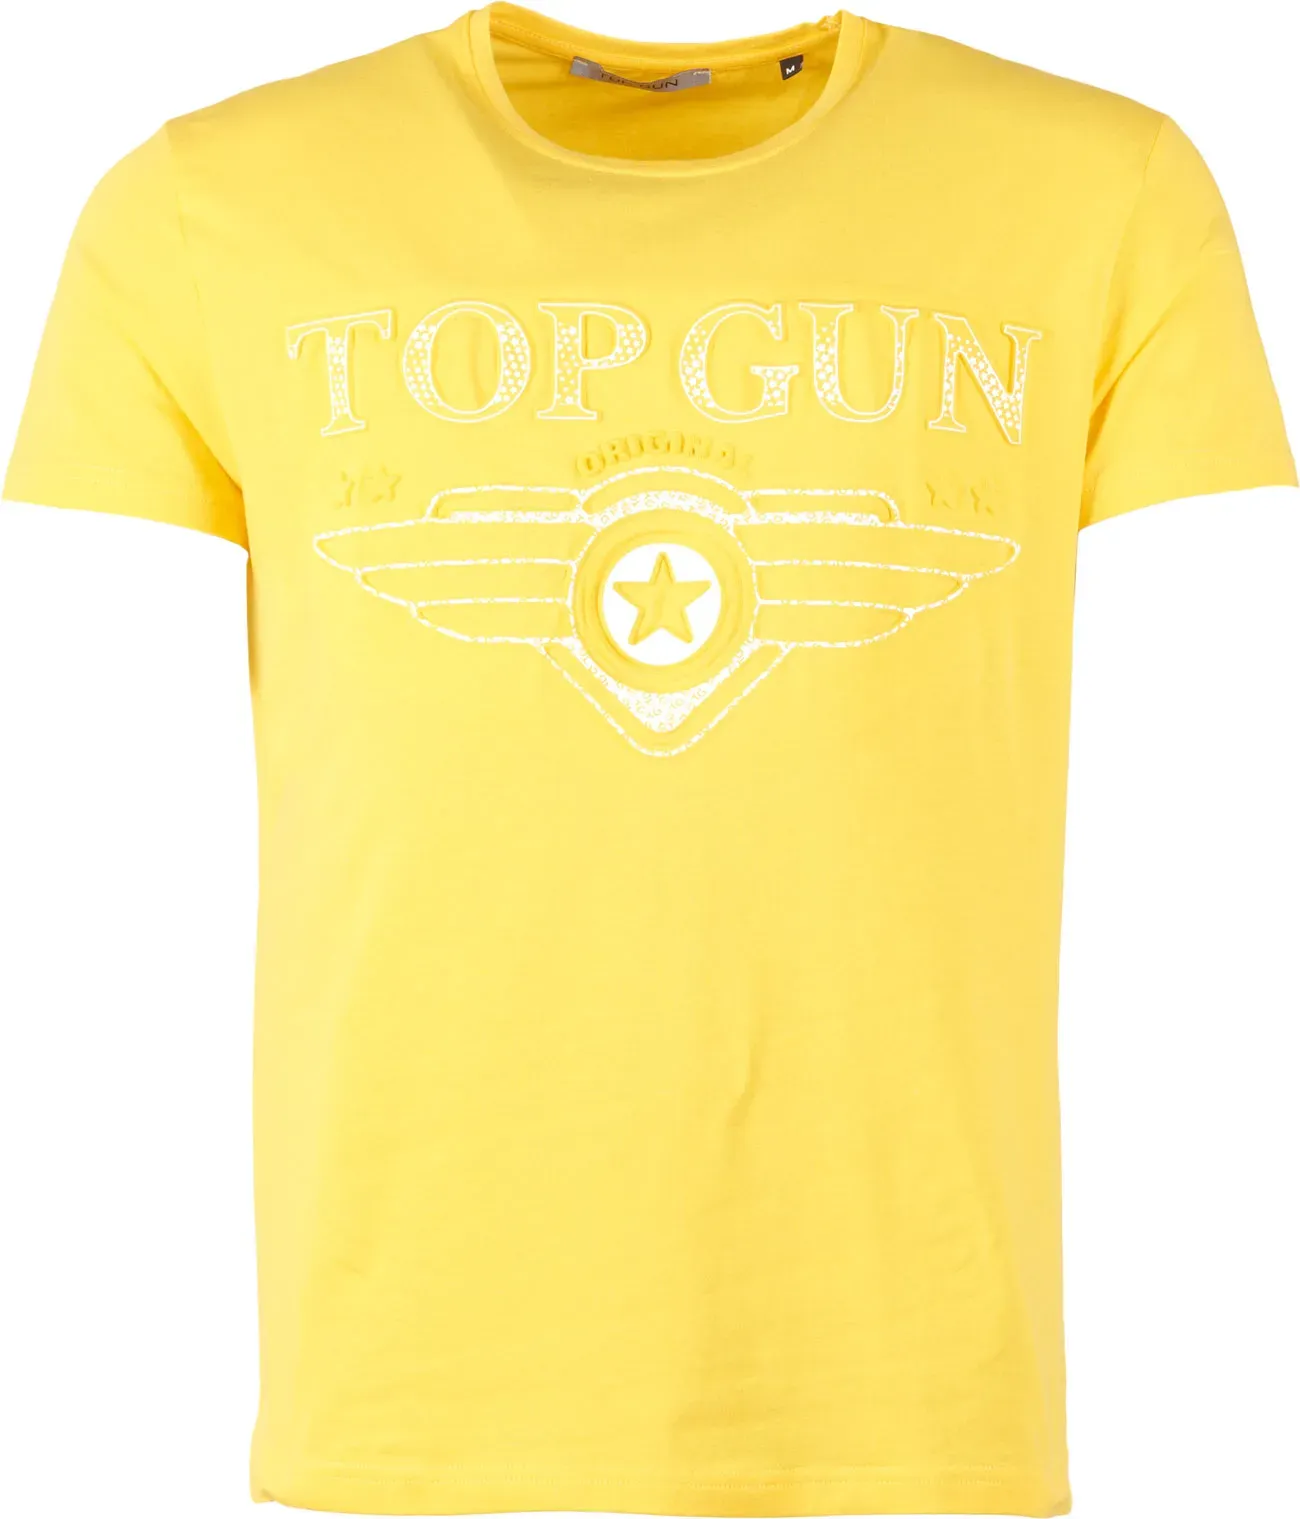 Top Gun Bling, t-shirt - Jaune - 4XL